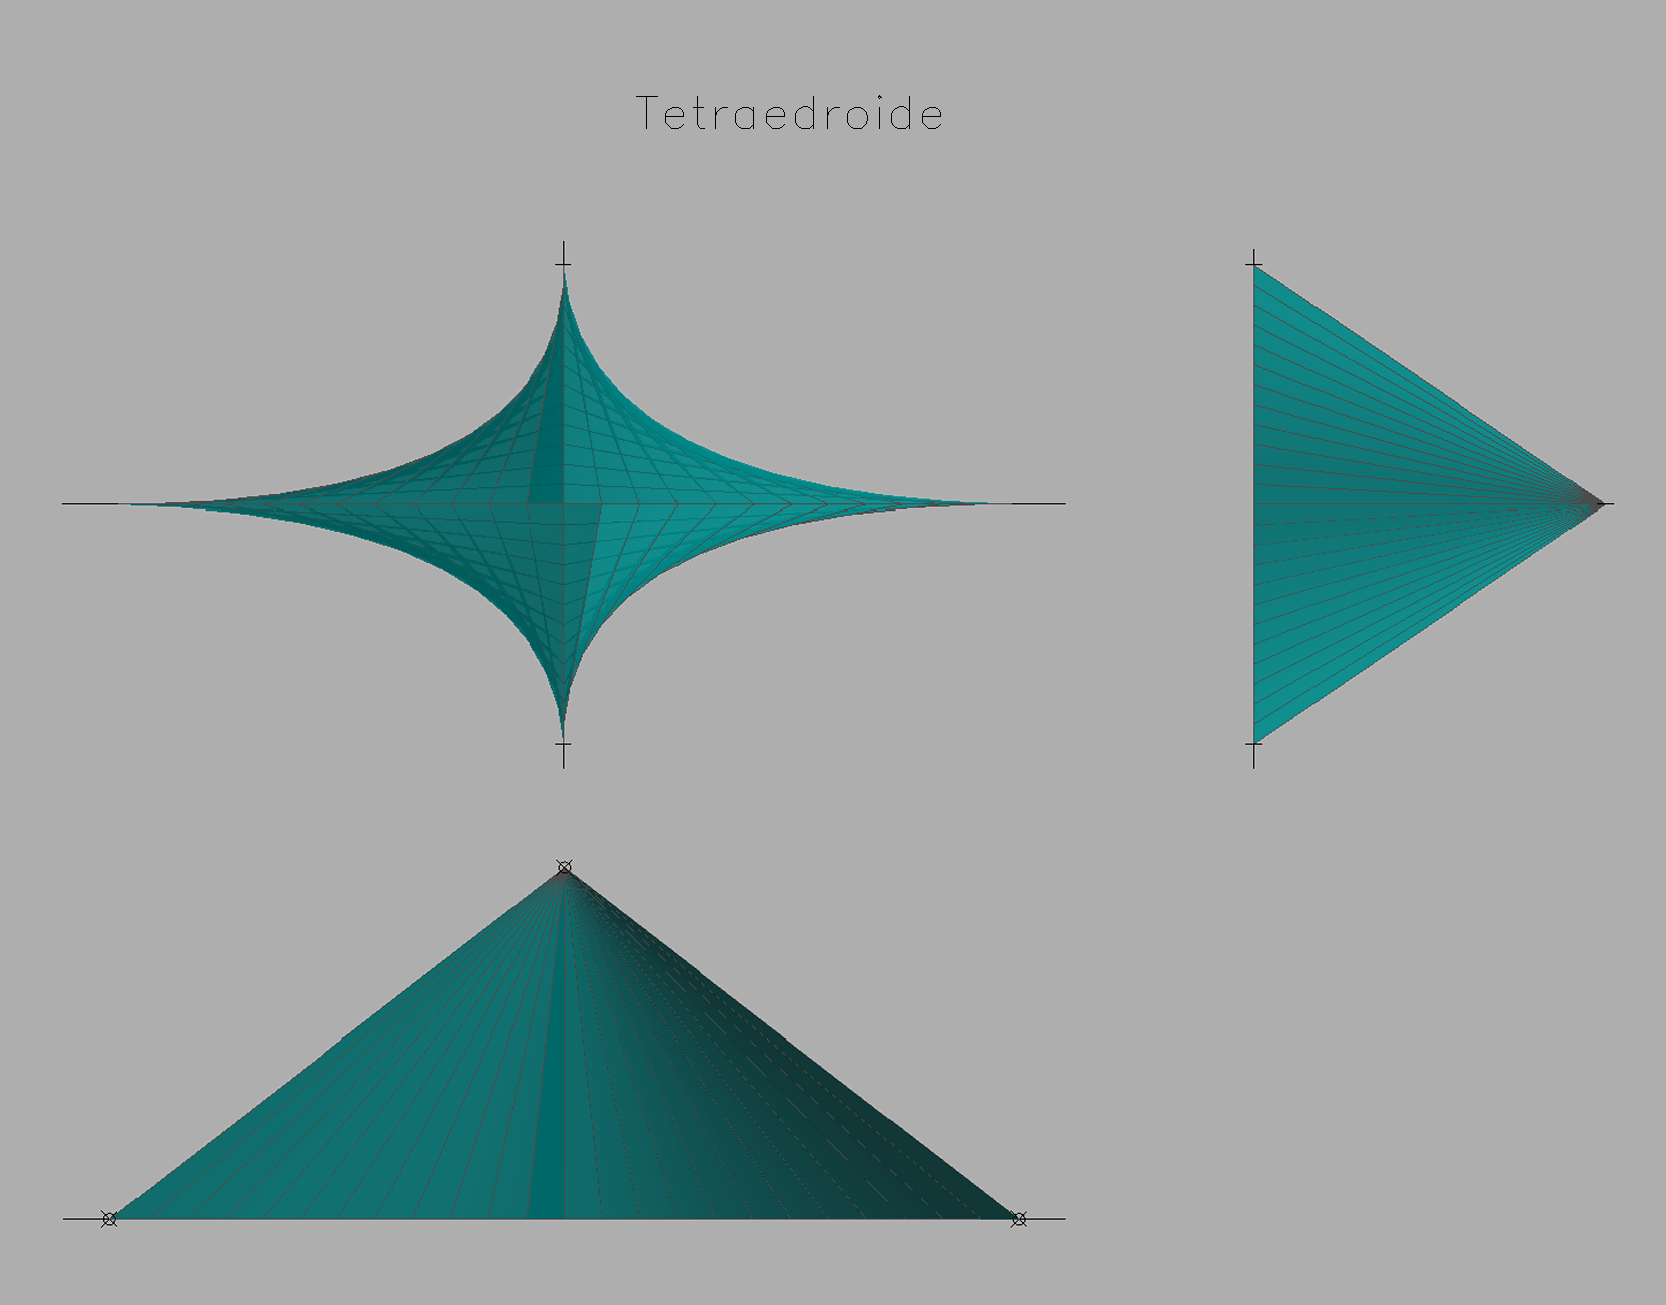 Tetraedroide